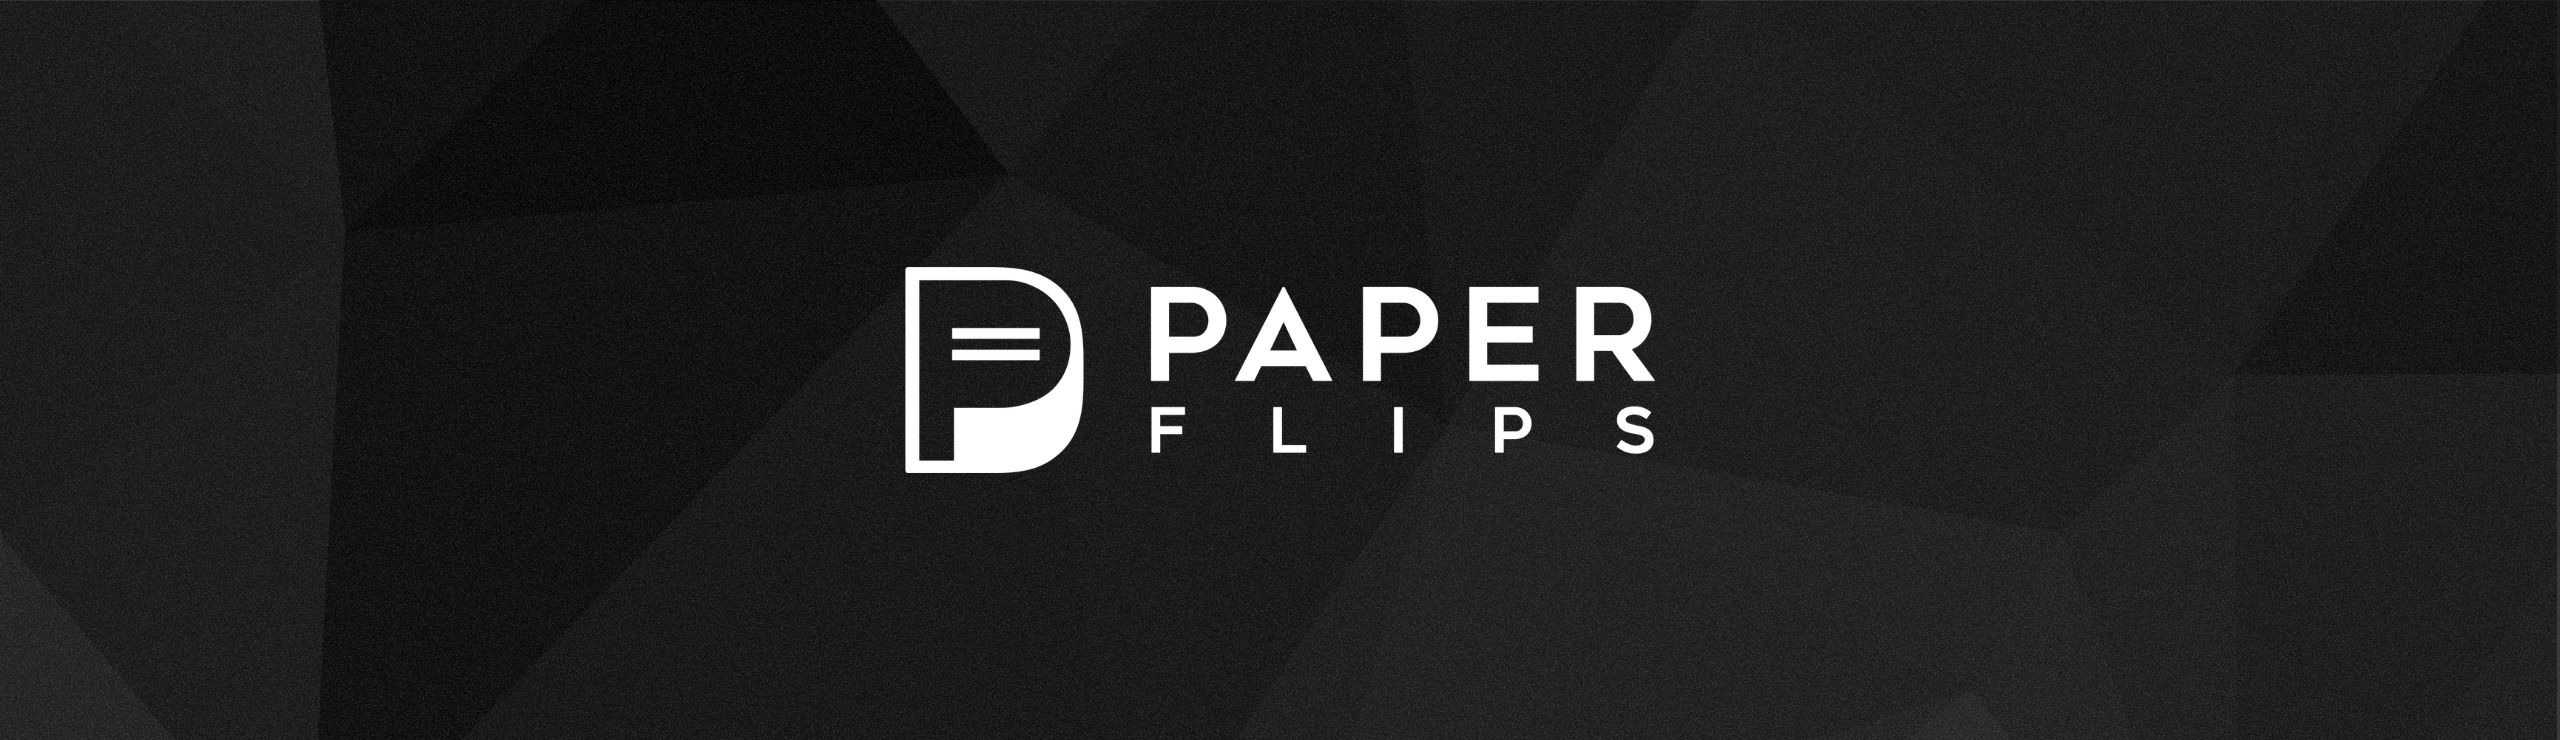 Paper Flips by Dolmar Cross